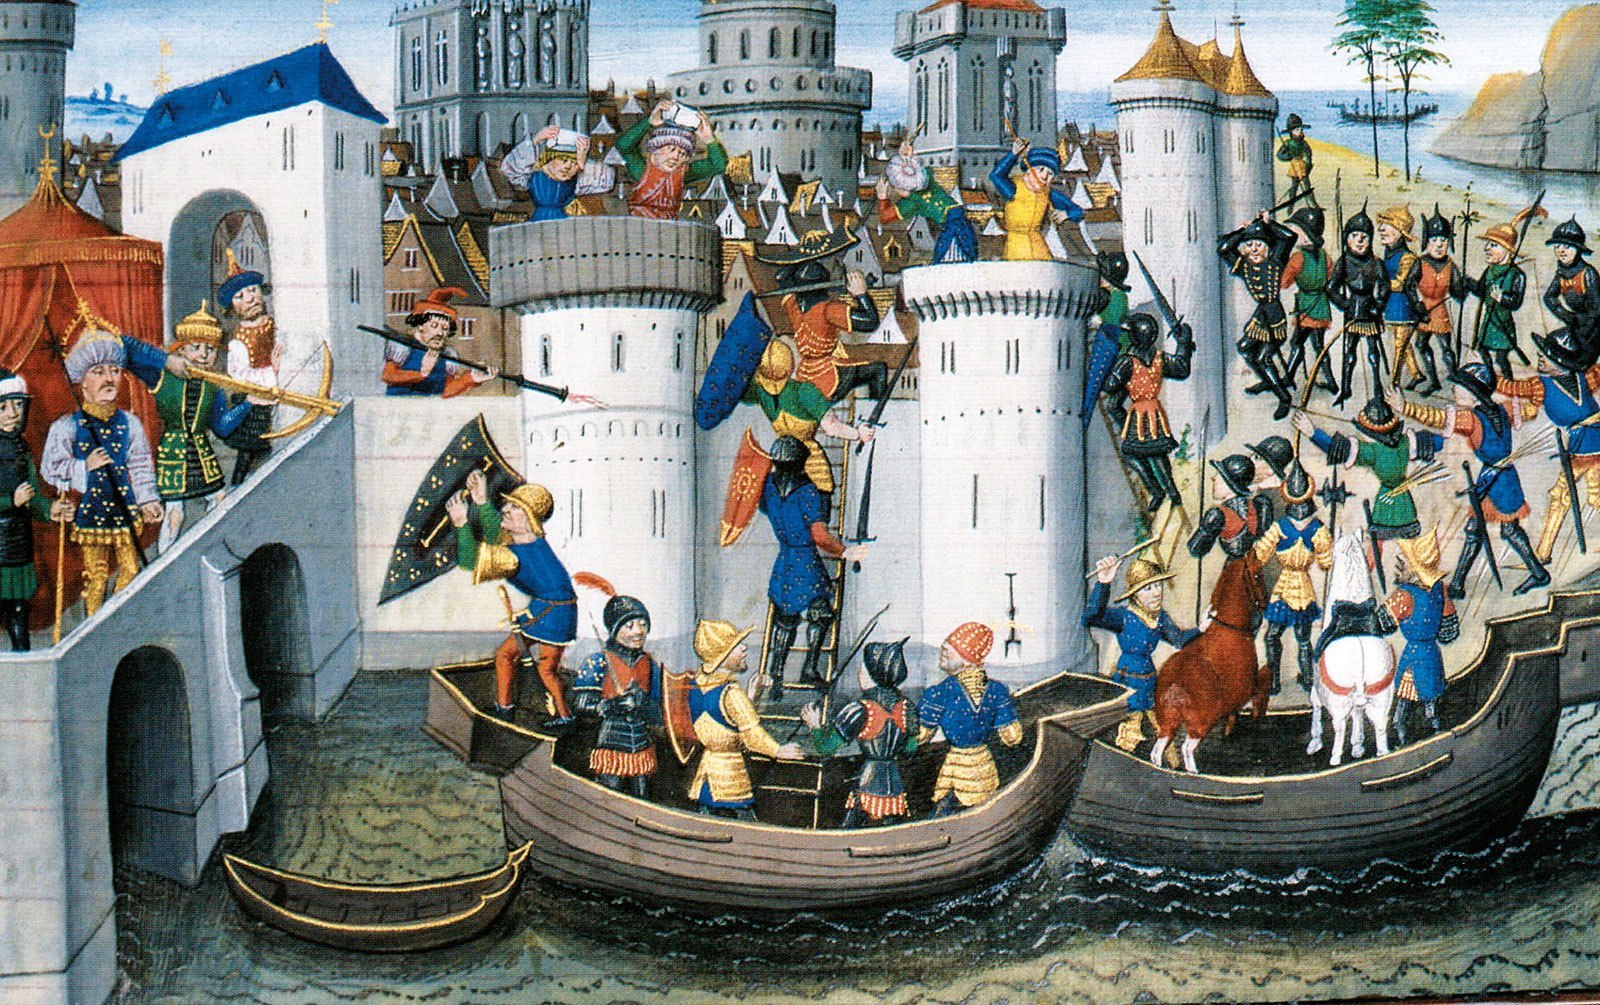 2-άλωση-Κωνσταντινούπολης-1204-Πολιορκία-Νεγροπόντε-Χαλκίδα-Βυζάντιο-Ενετοκρατία